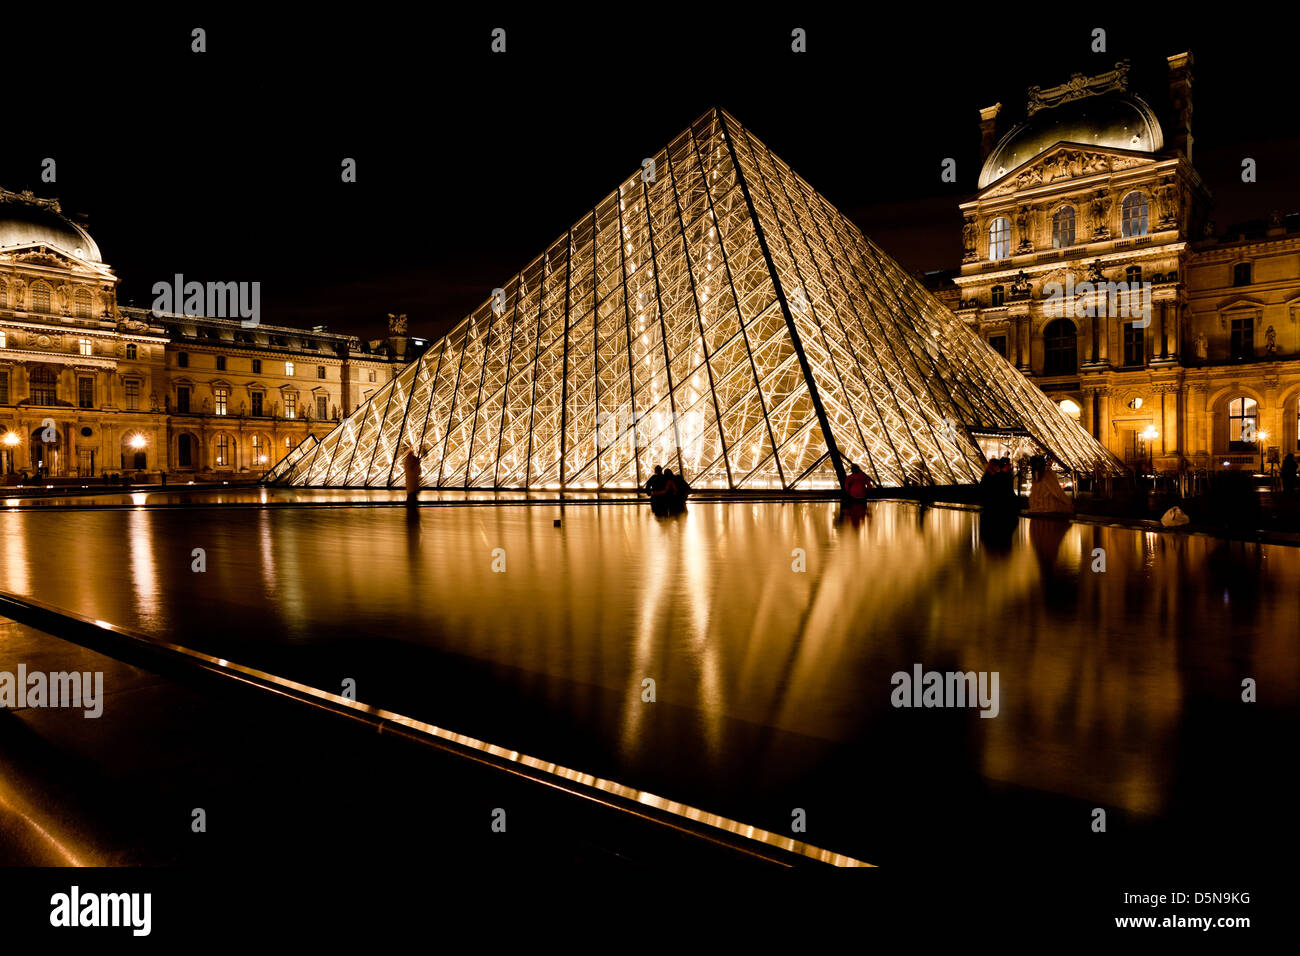 Pyramide de verre du Louvre, Paris la nuit Banque D'Images